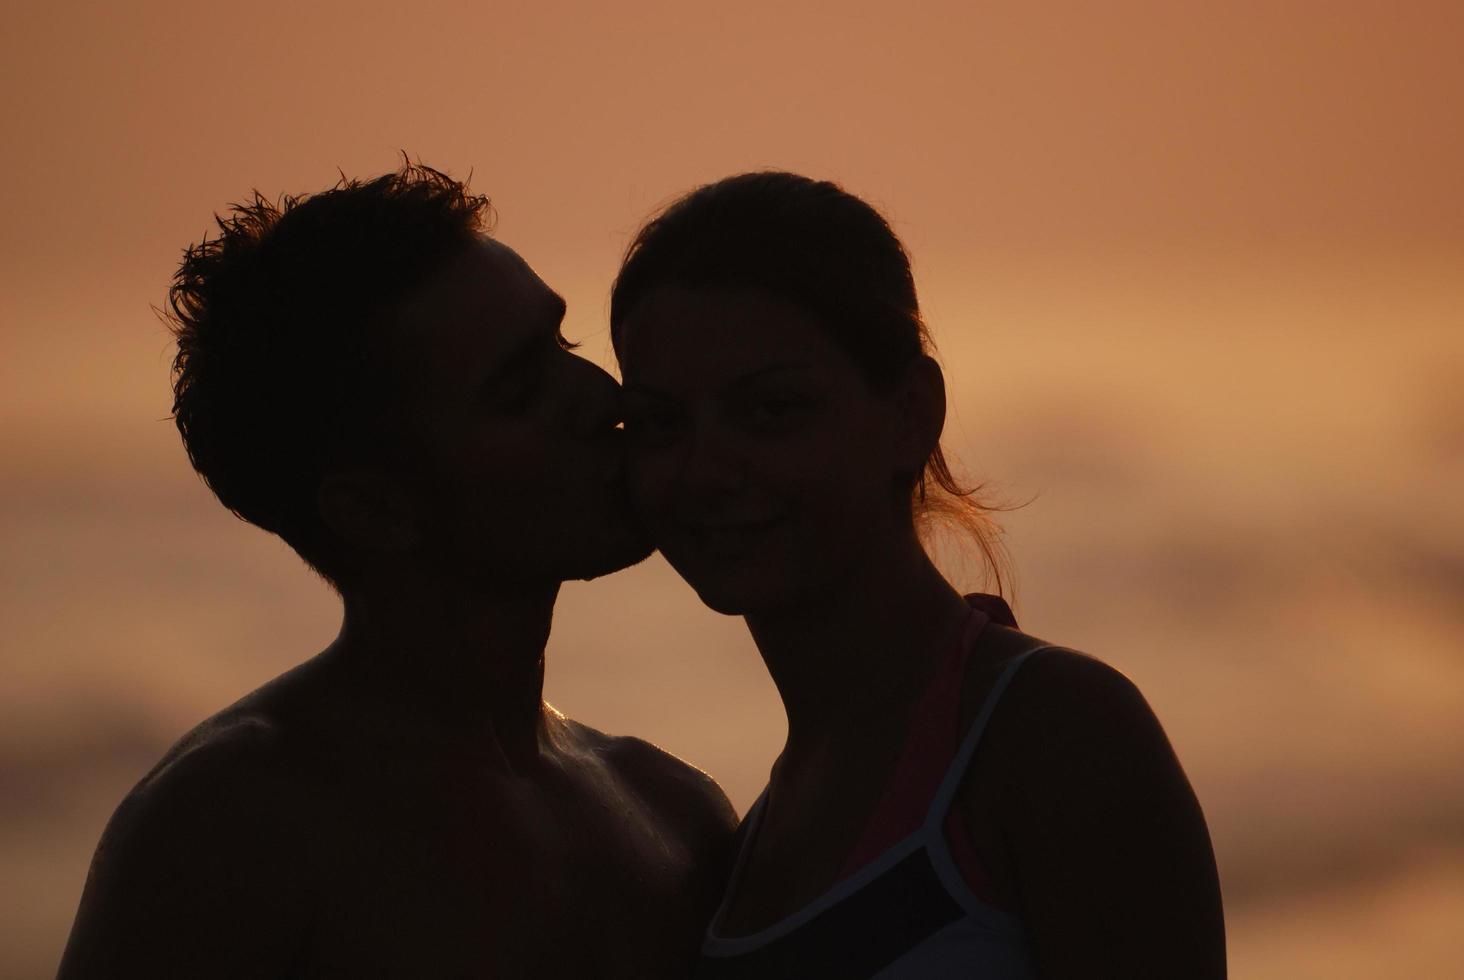 romantisches Paar am Strand foto